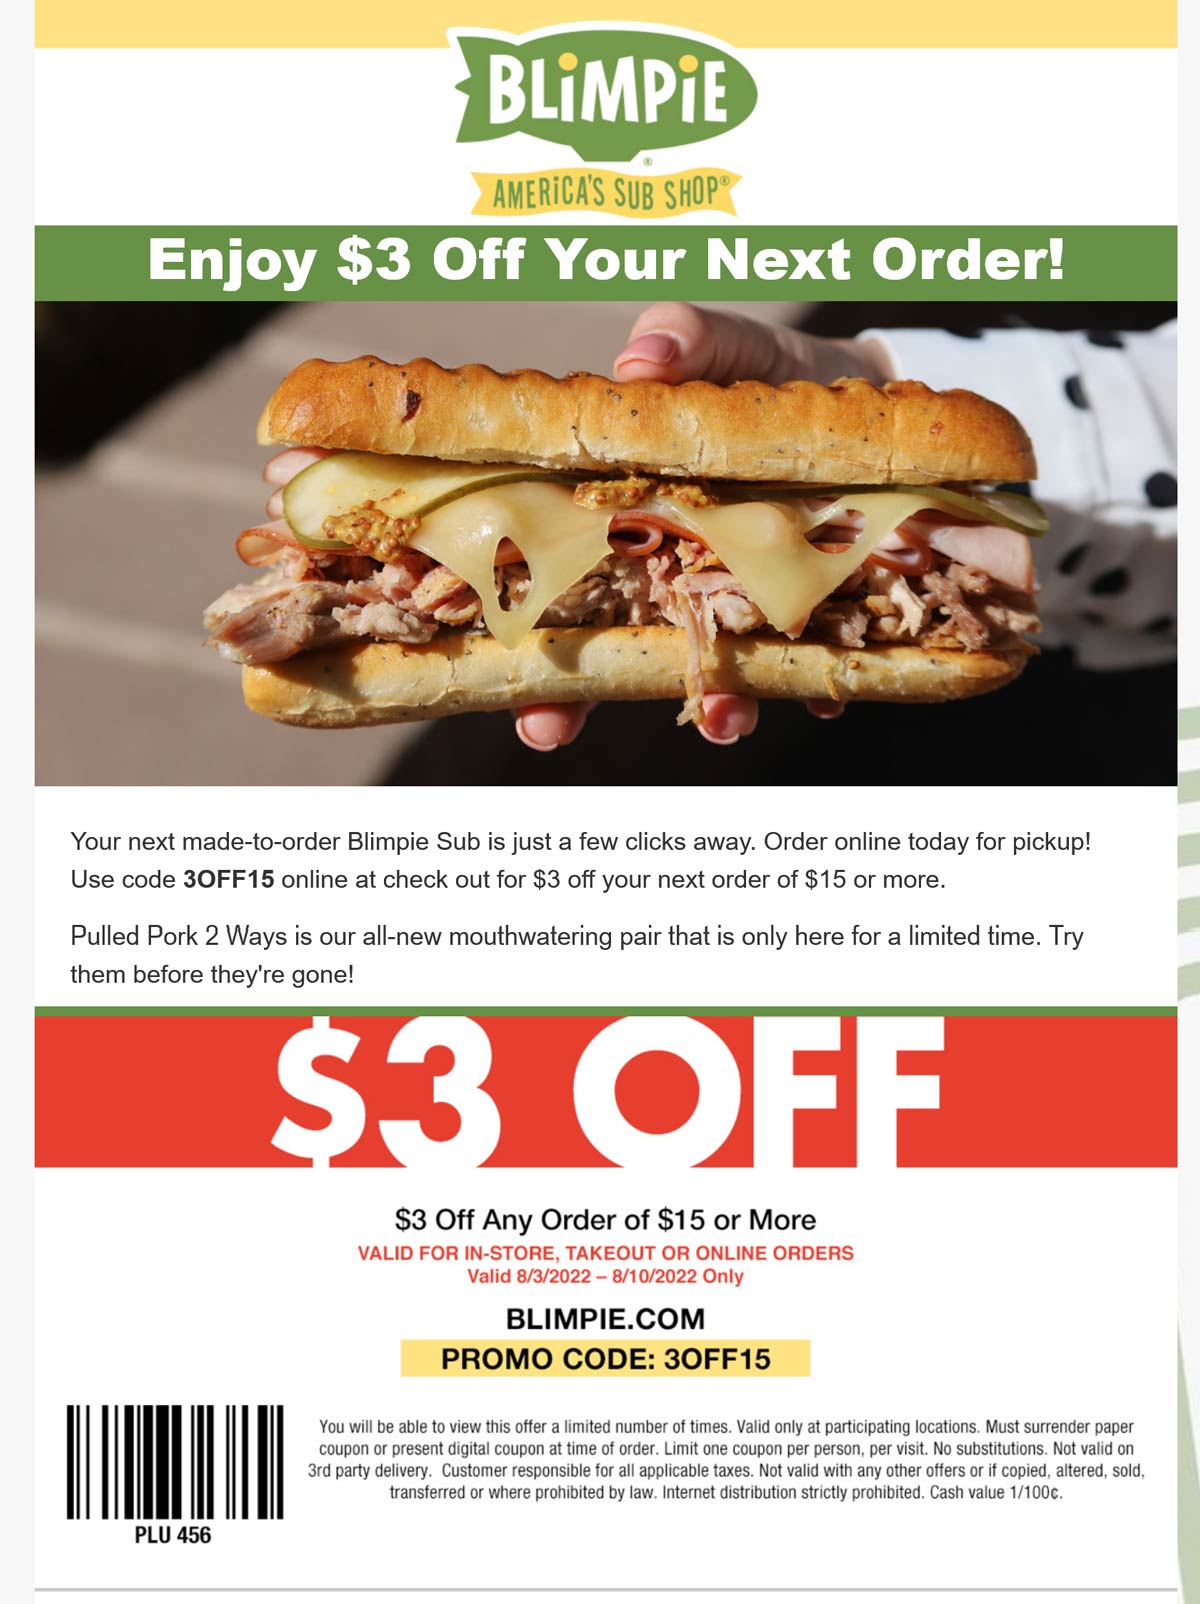 Blimpie restaurants Coupon  $3 off $15 at Blimpie sandwich shop via promo code 3OFF15 #blimpie 